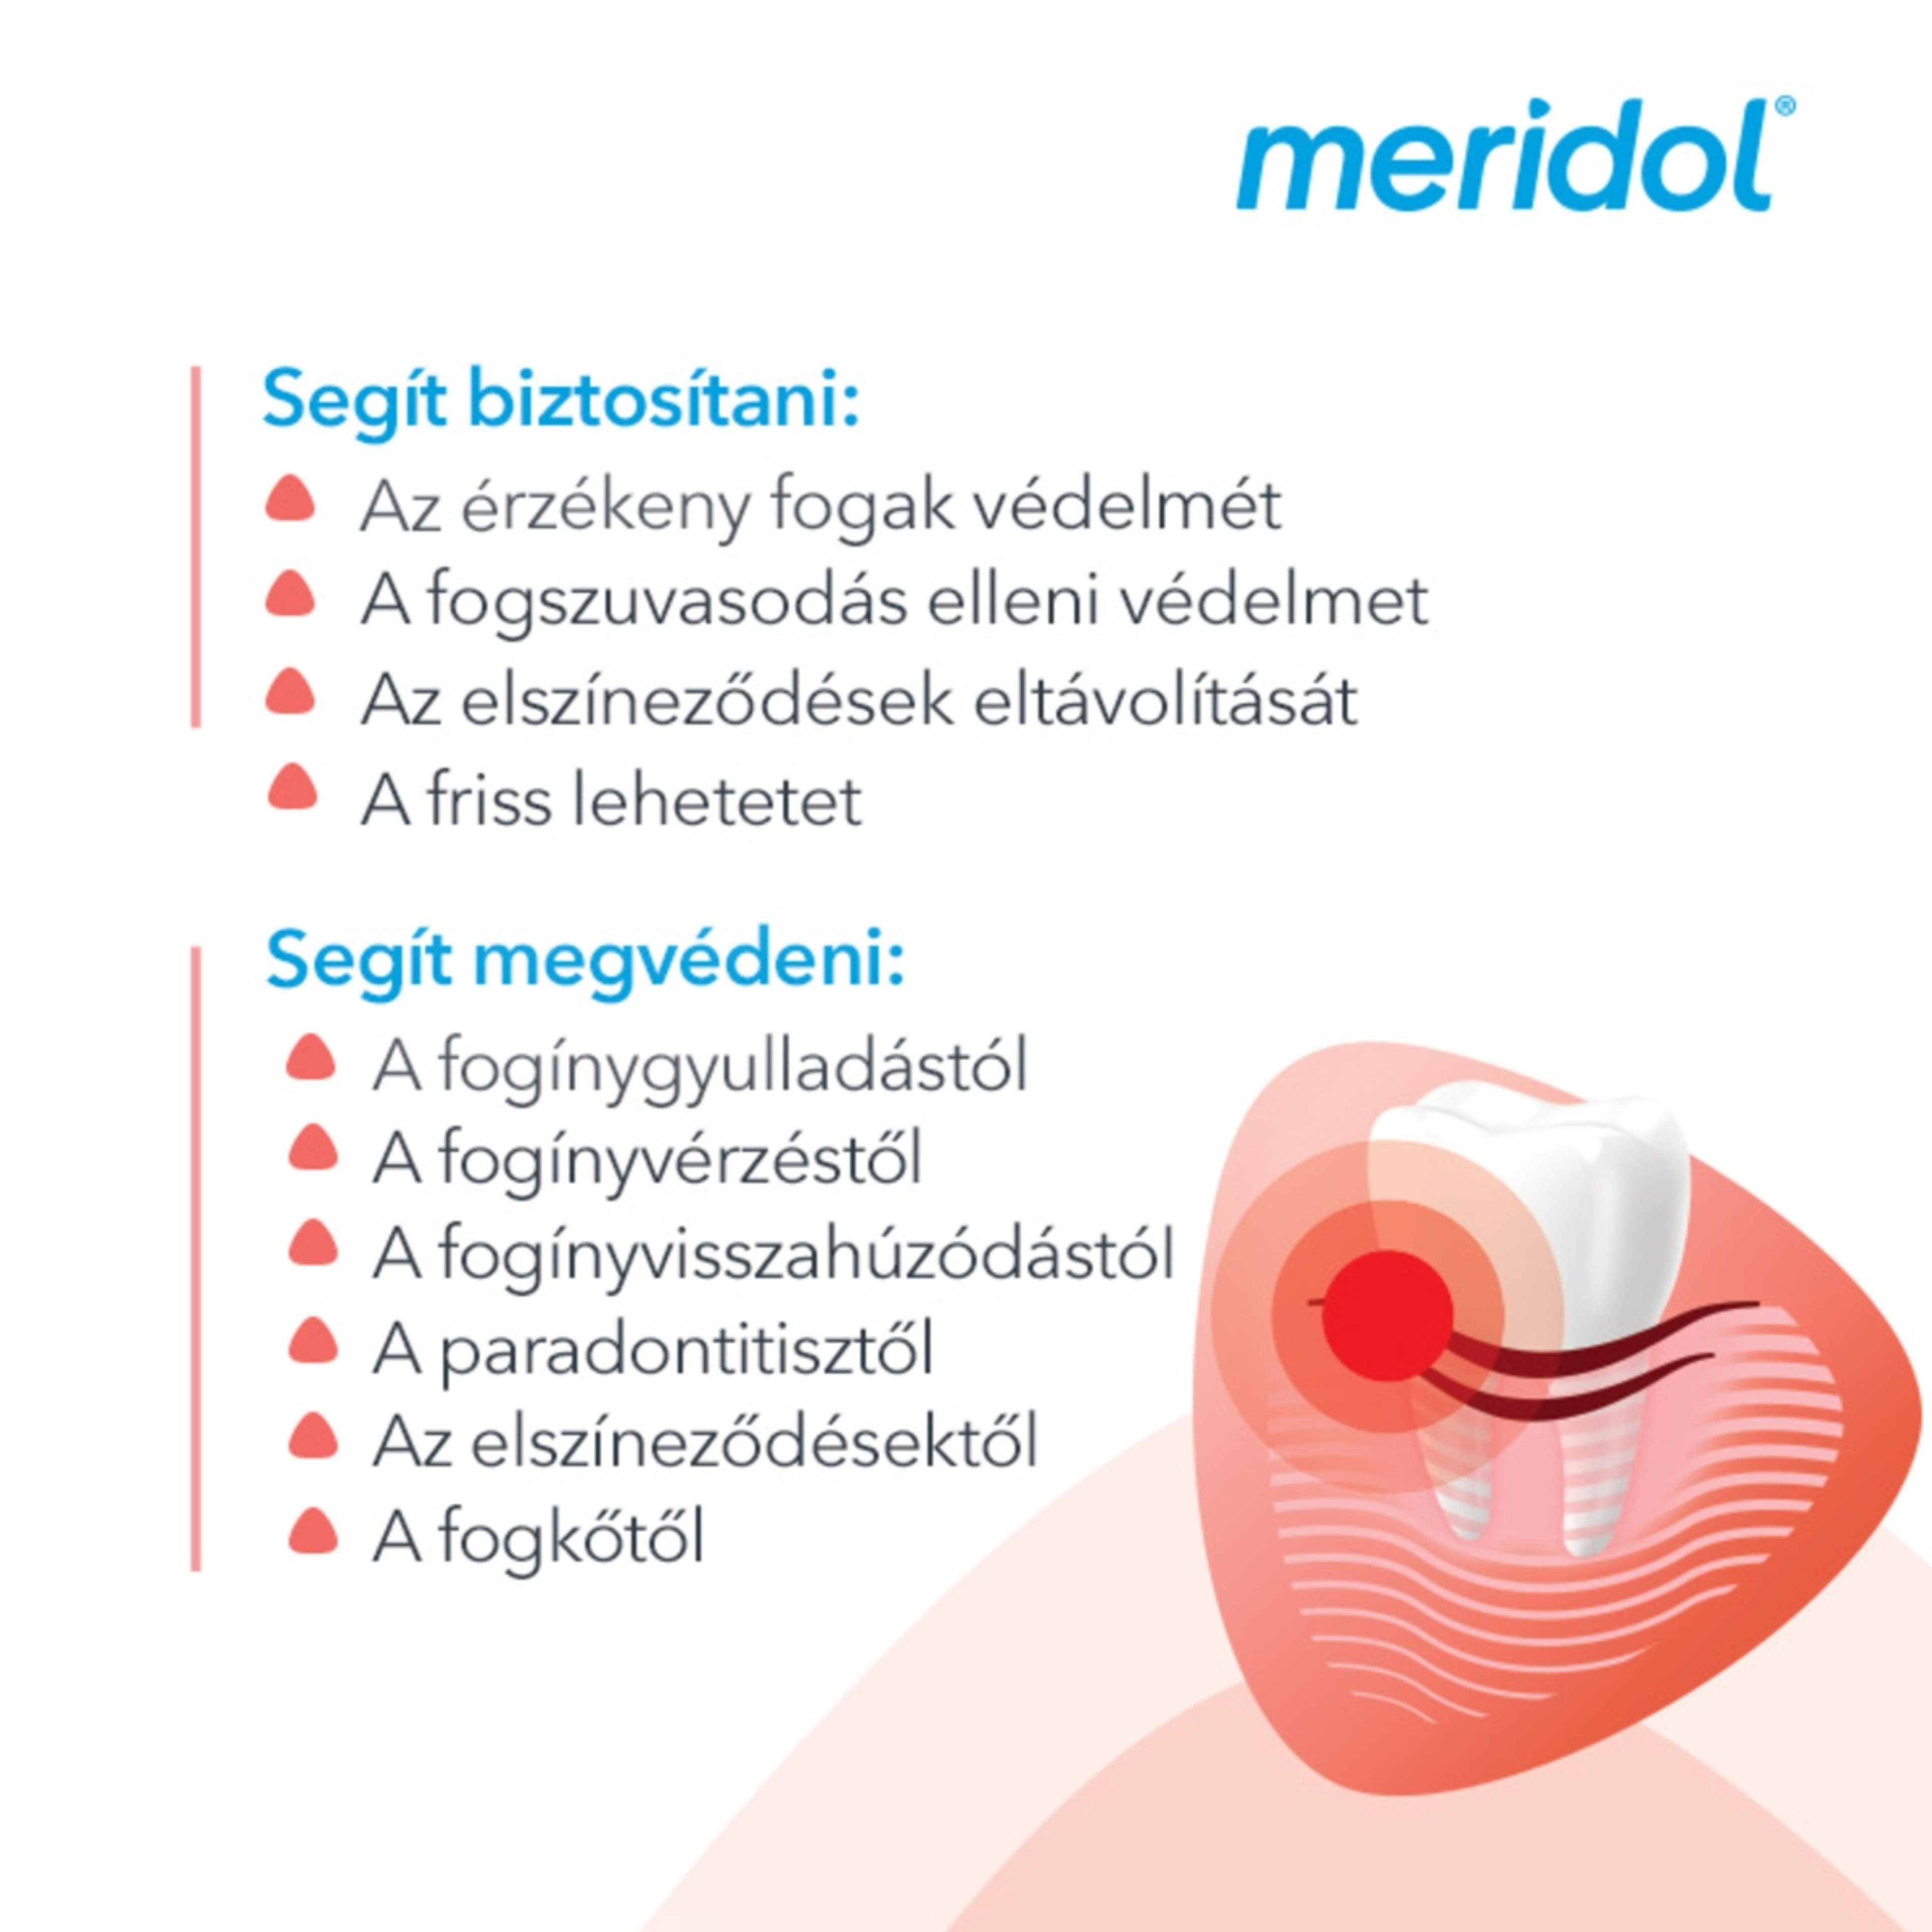 Meridol Complete Care fogkrém érzékeny fogíny és fogak védelmére - 75 ml-7